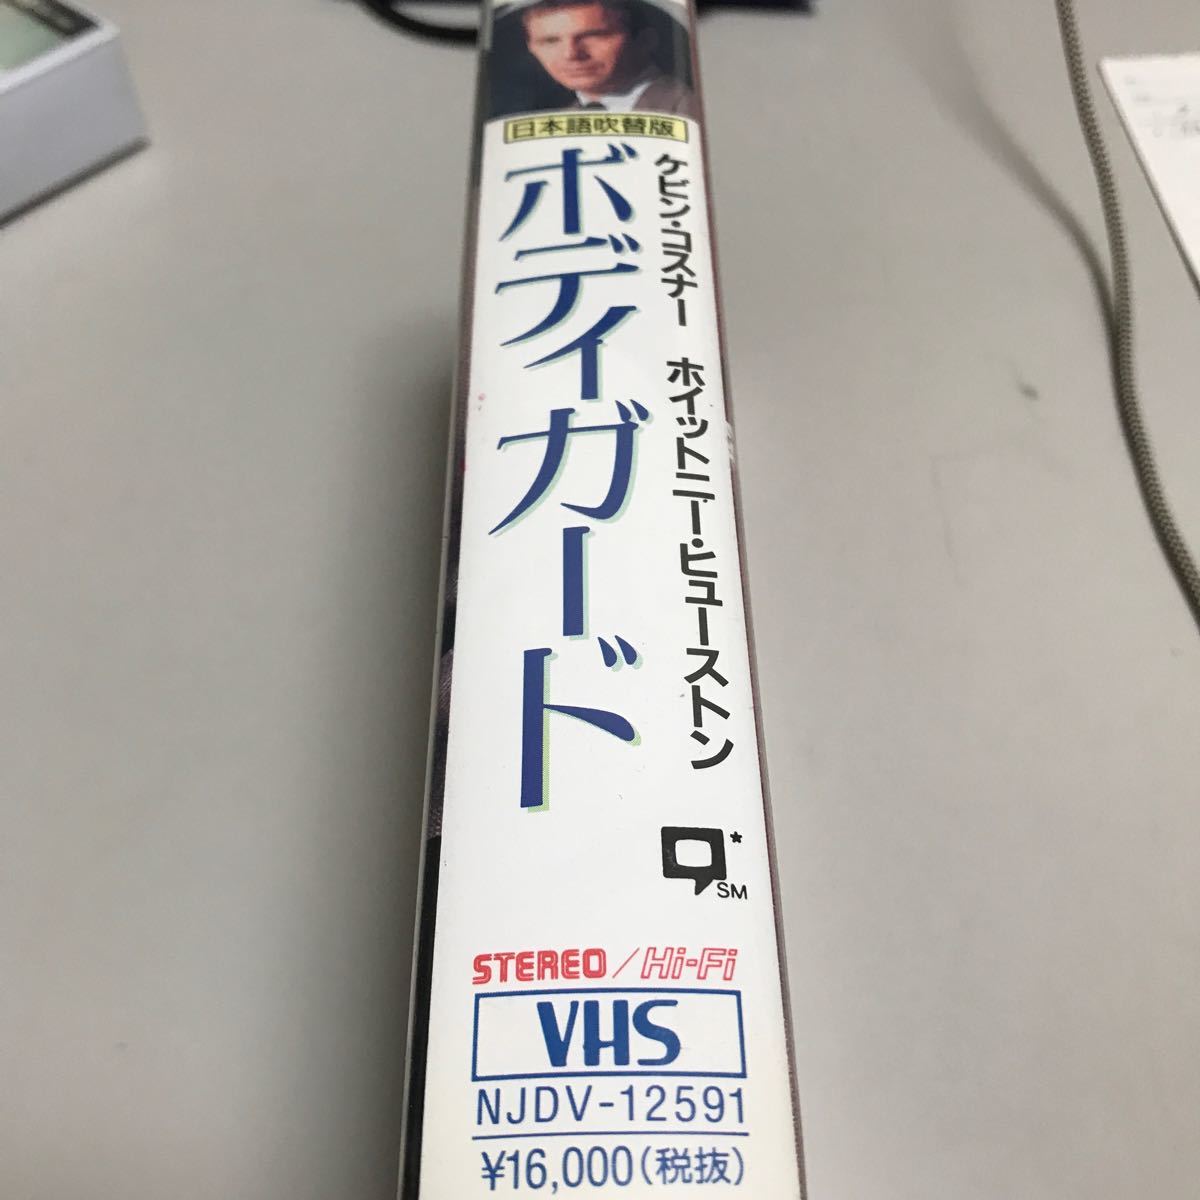 ケビンコスナー　ボディガード　日本語吹替版　VHS   